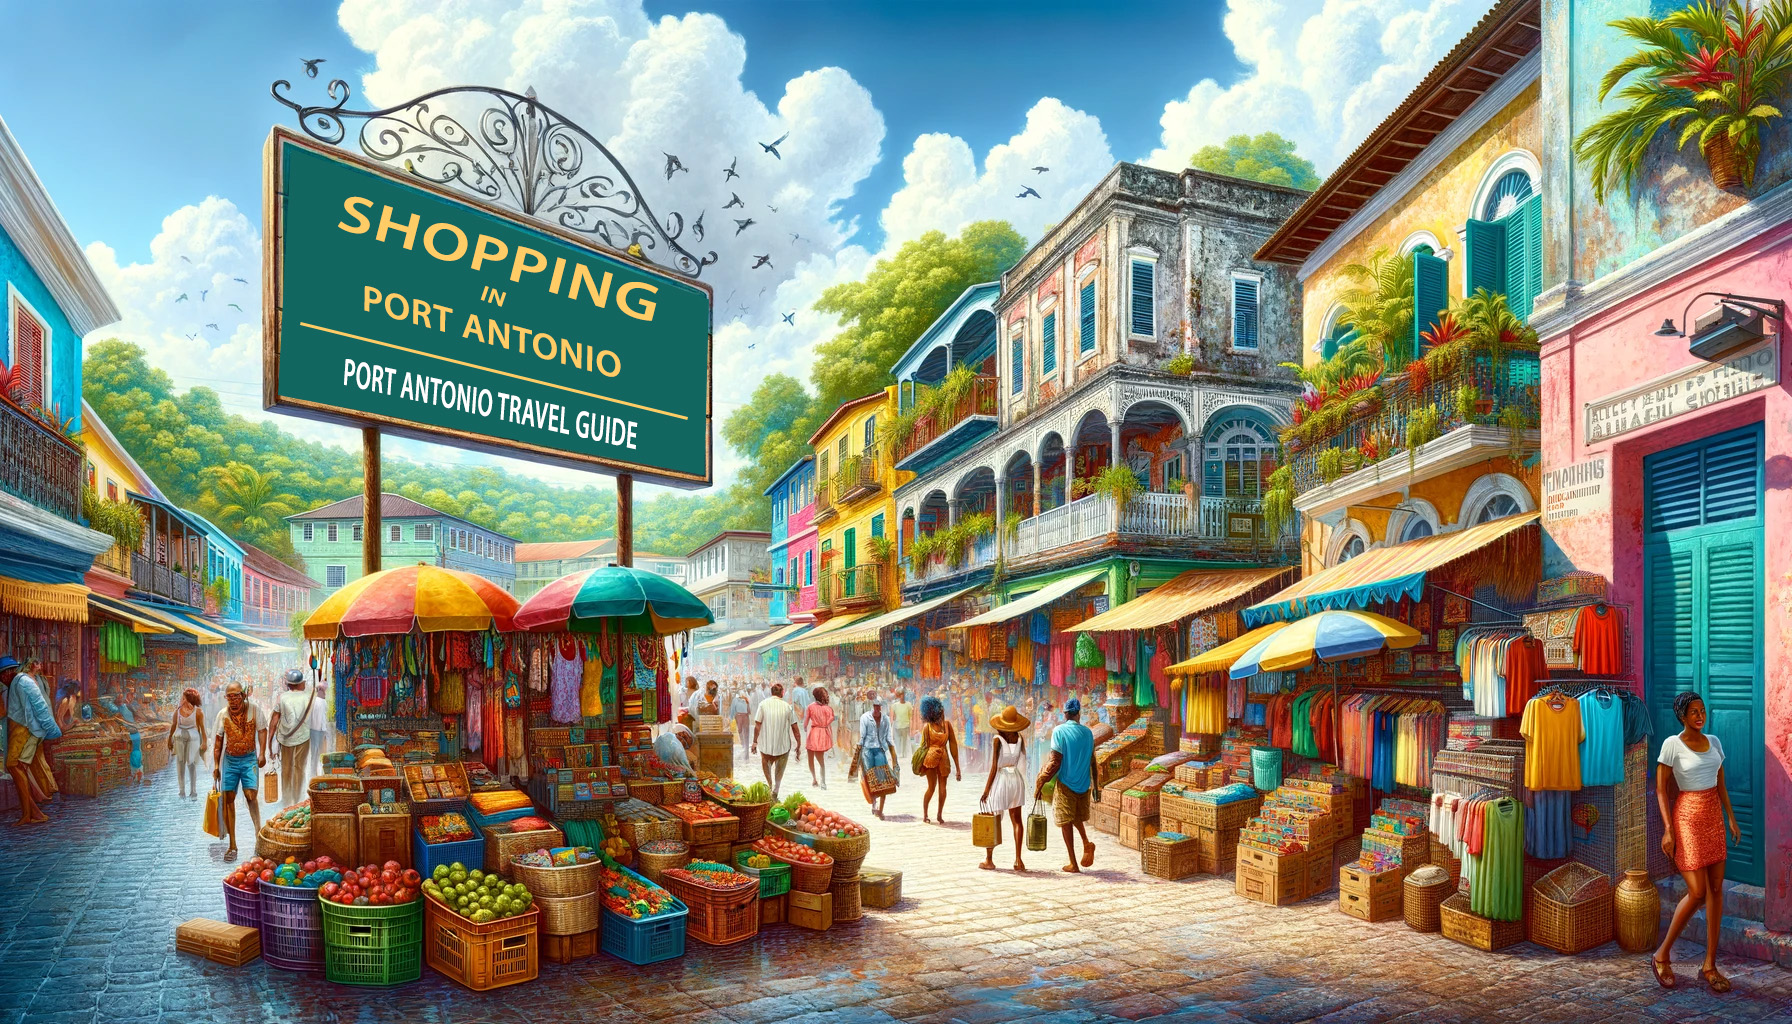 Shopping in Port Antonio -  Port Antonio Travel Guide